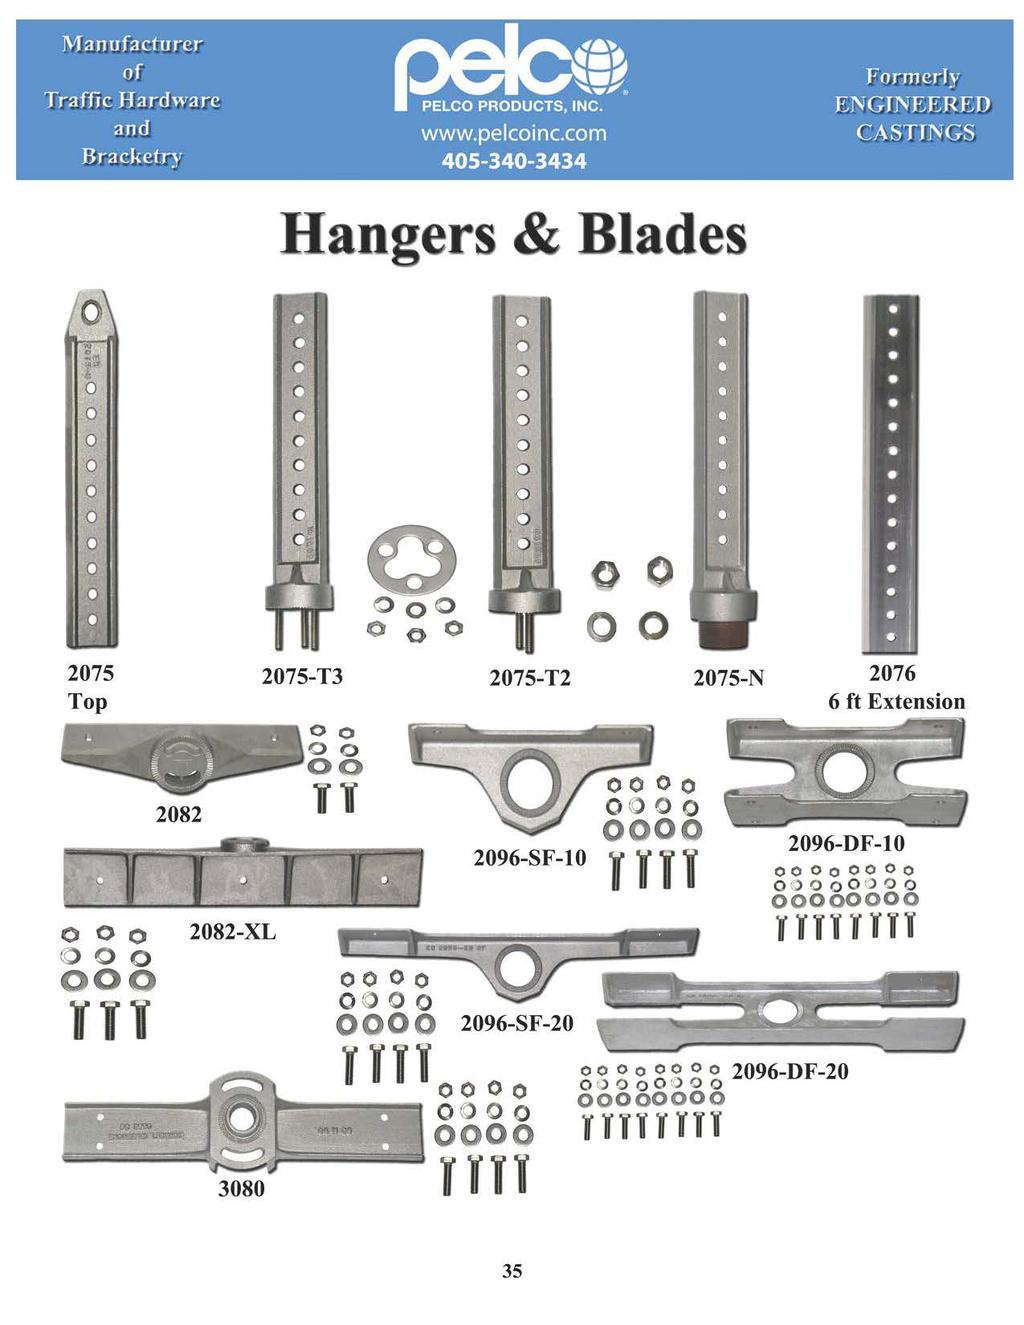 Manufacturer Hangers & Blades Q 275 Top 282 282-XL oo o lll 275-T3 oo o o '' 275-T2 296-SF-1 r ''' 275-N 276 6 ft